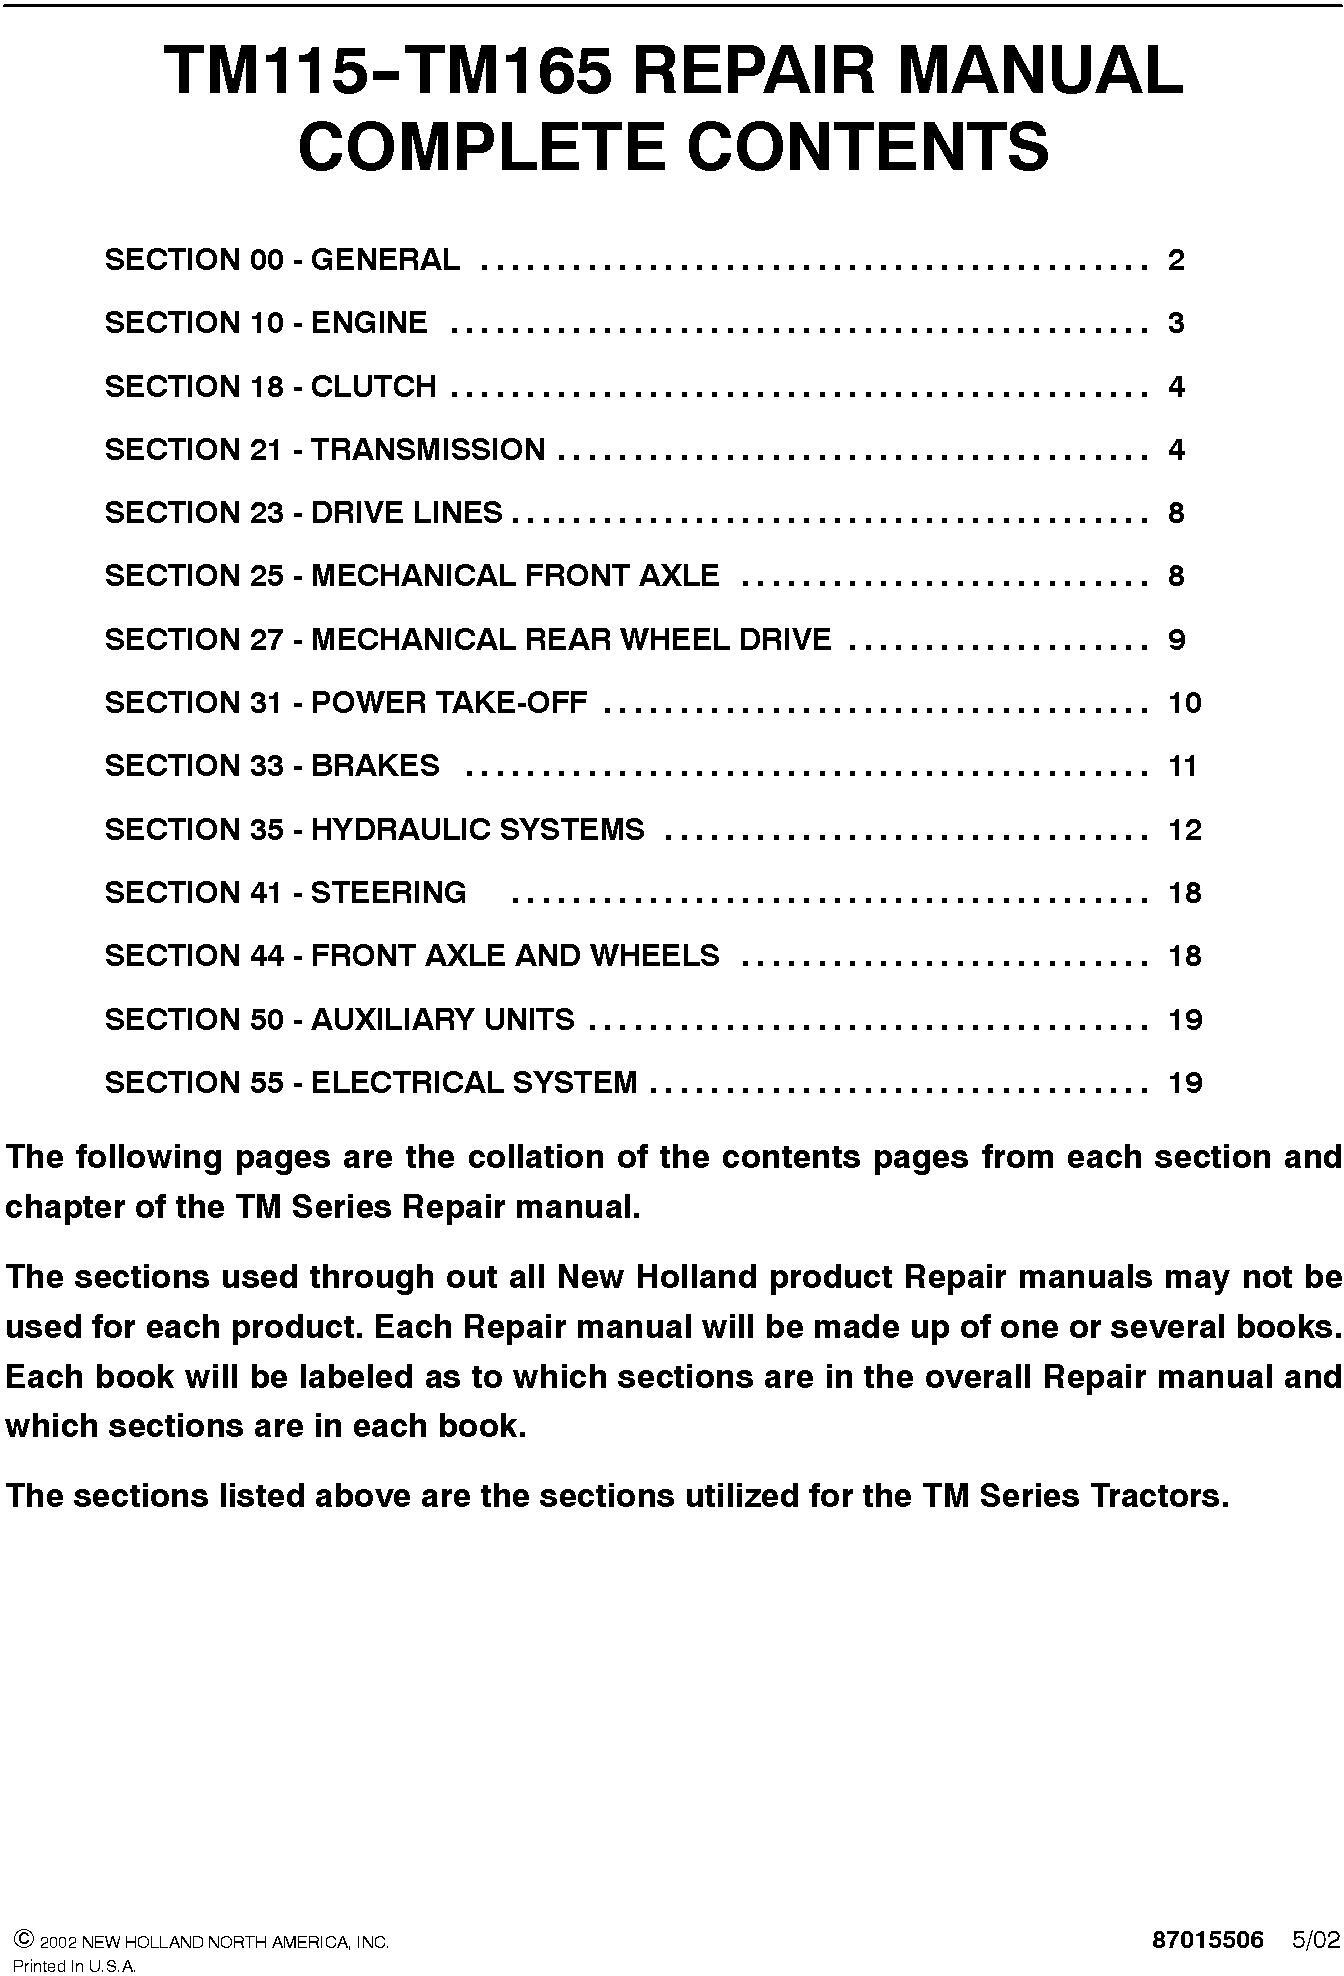 New Holland TM115, TM125, TM135, TM150, TM165 Tractor Comlete Service Manual - 19594